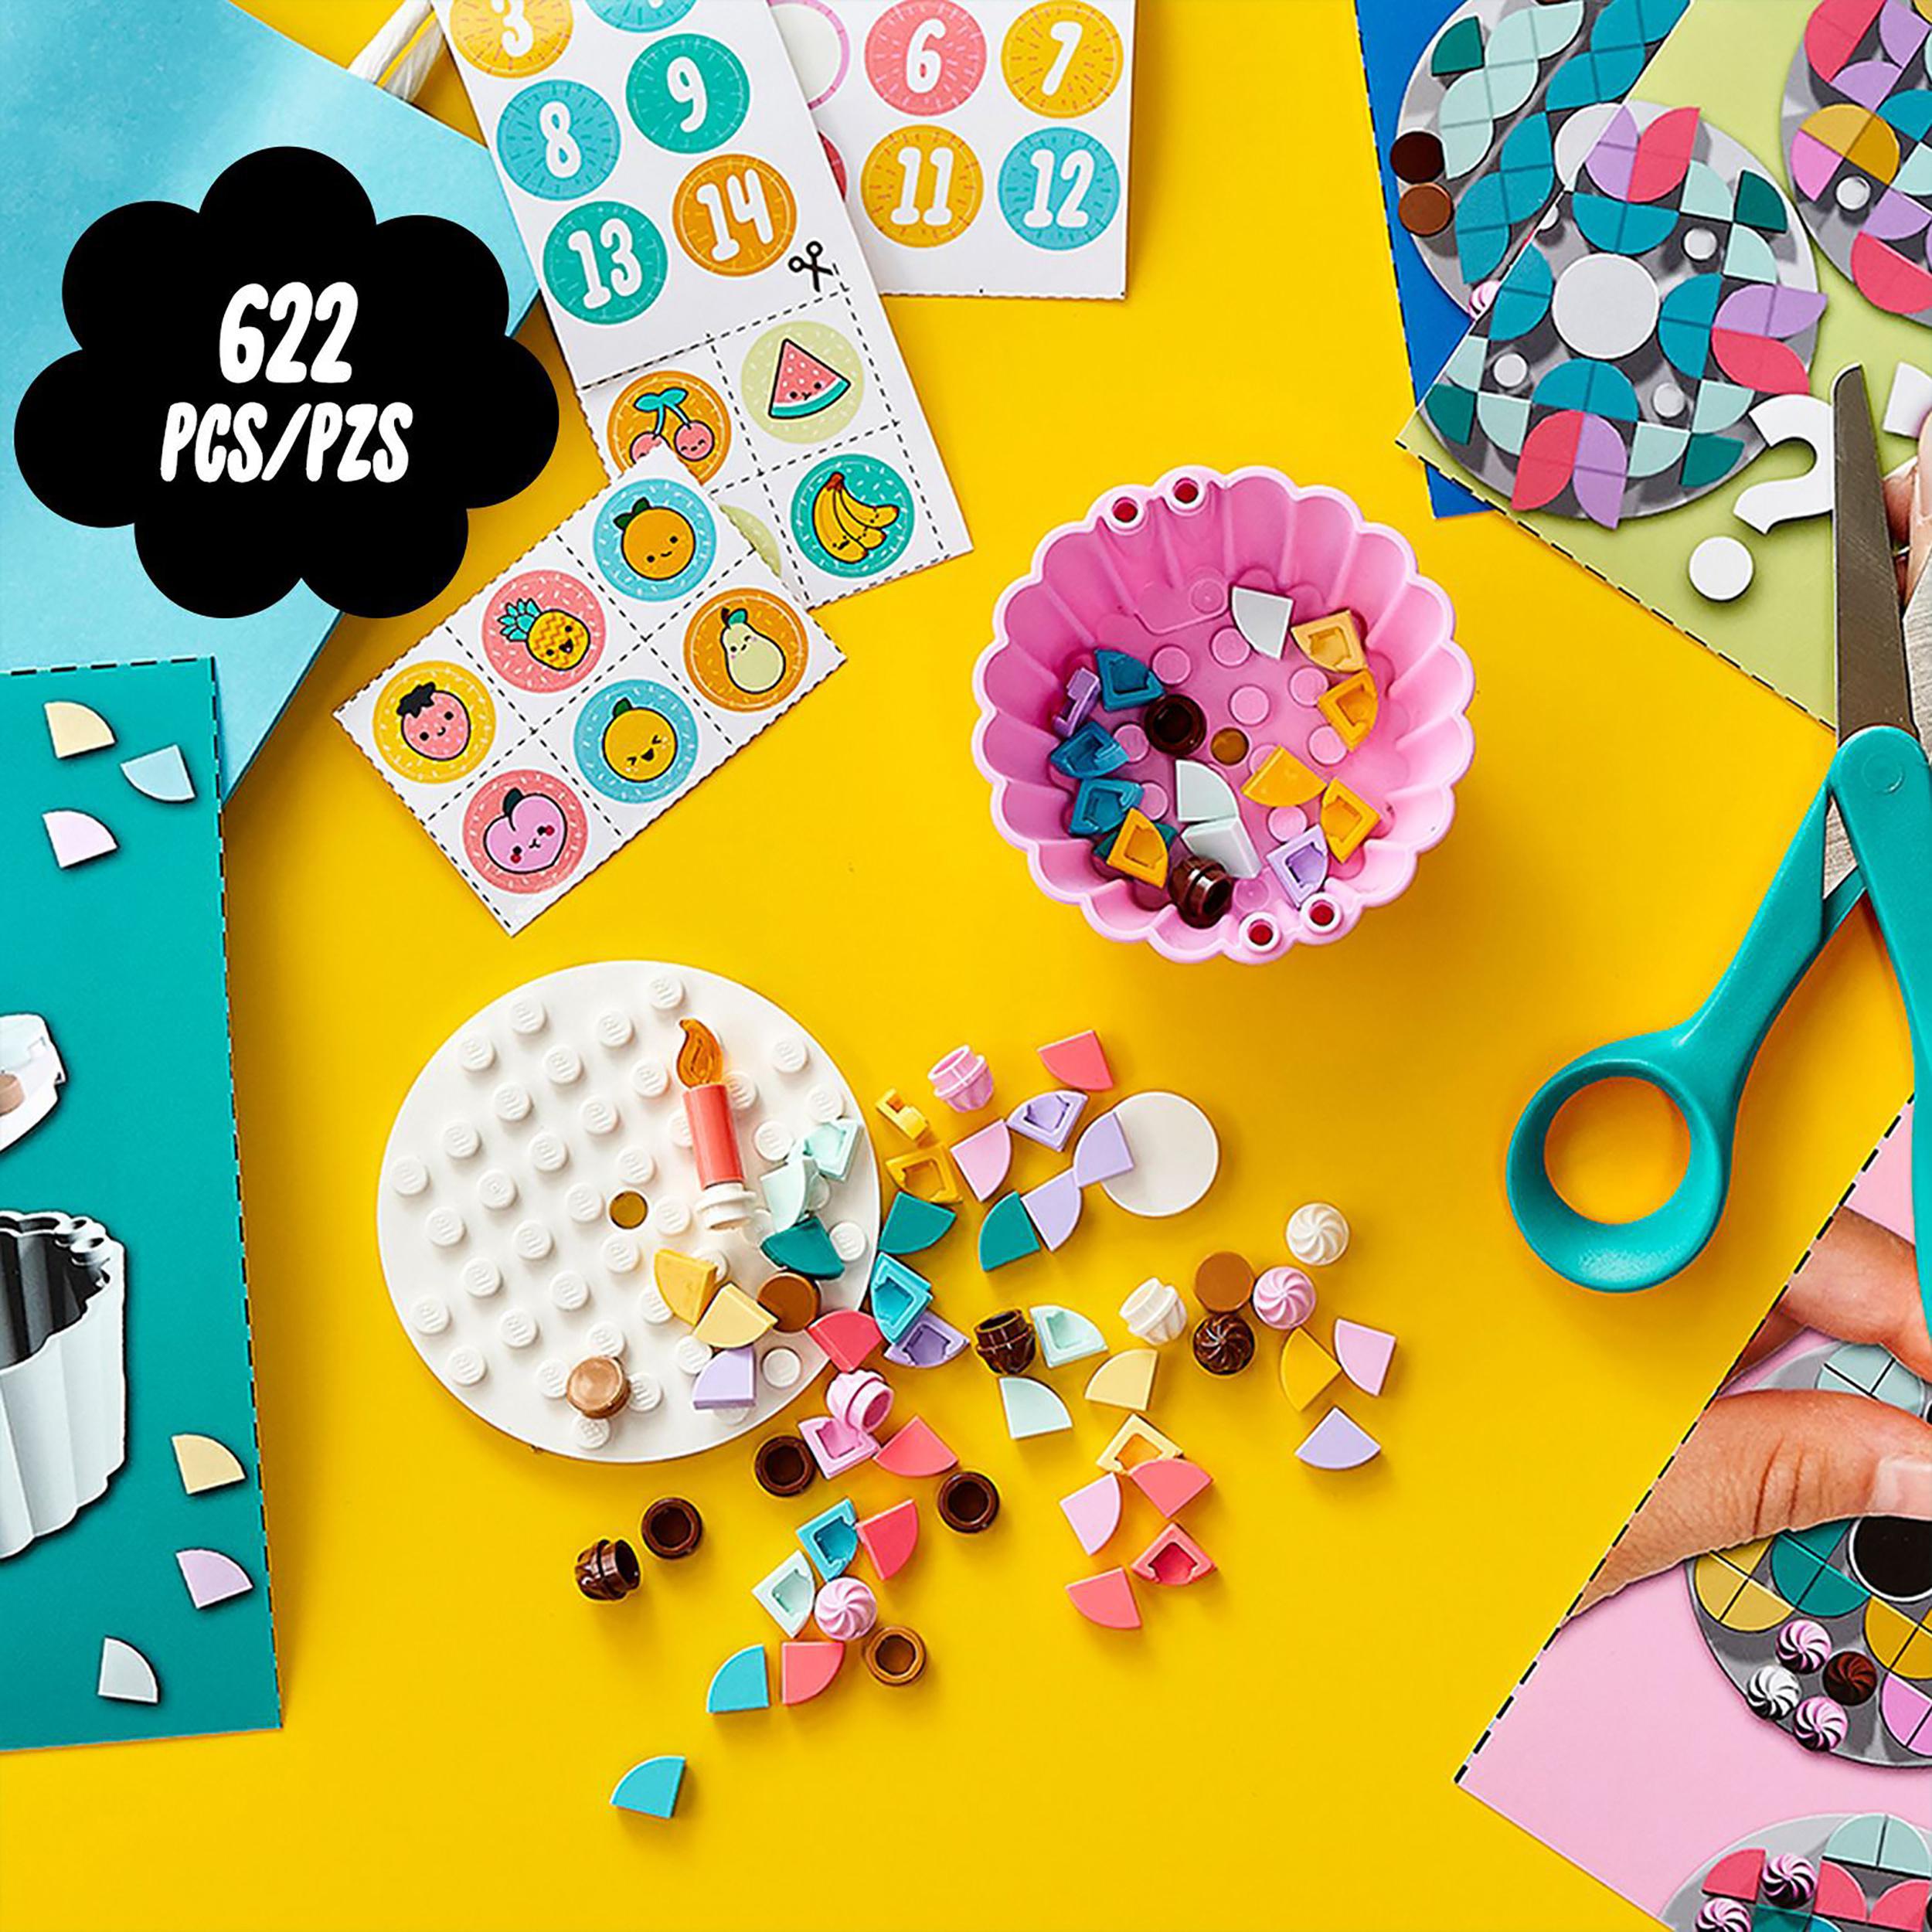 LEGO® DOTS Creative Party Kit Cupcakes Set 41926 Default Title